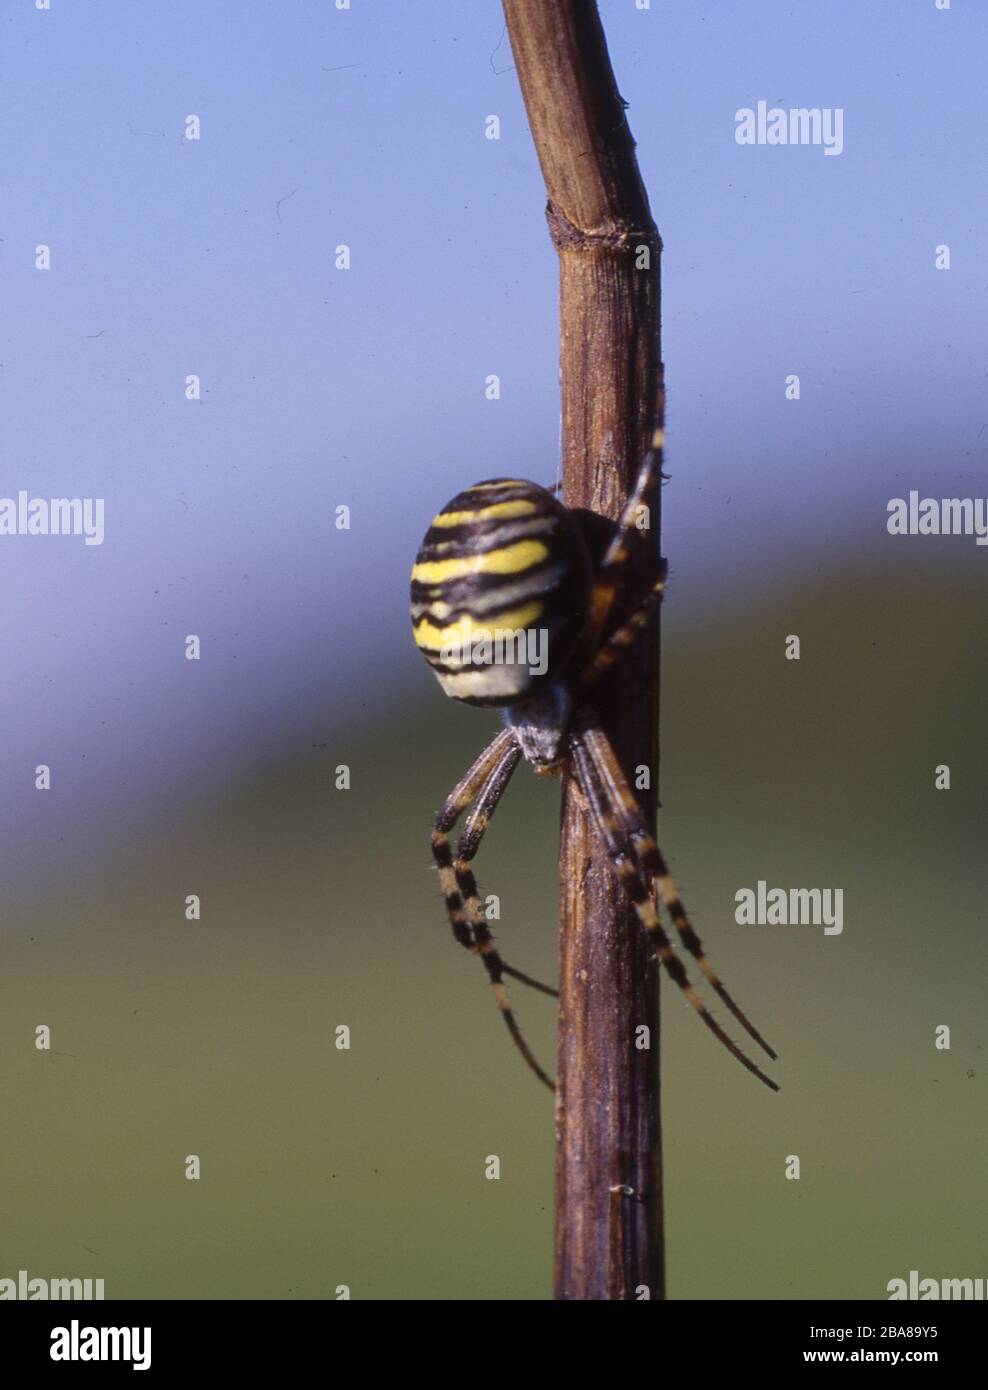 Wespenspinne sitzt auf Grashalm Foto Stock